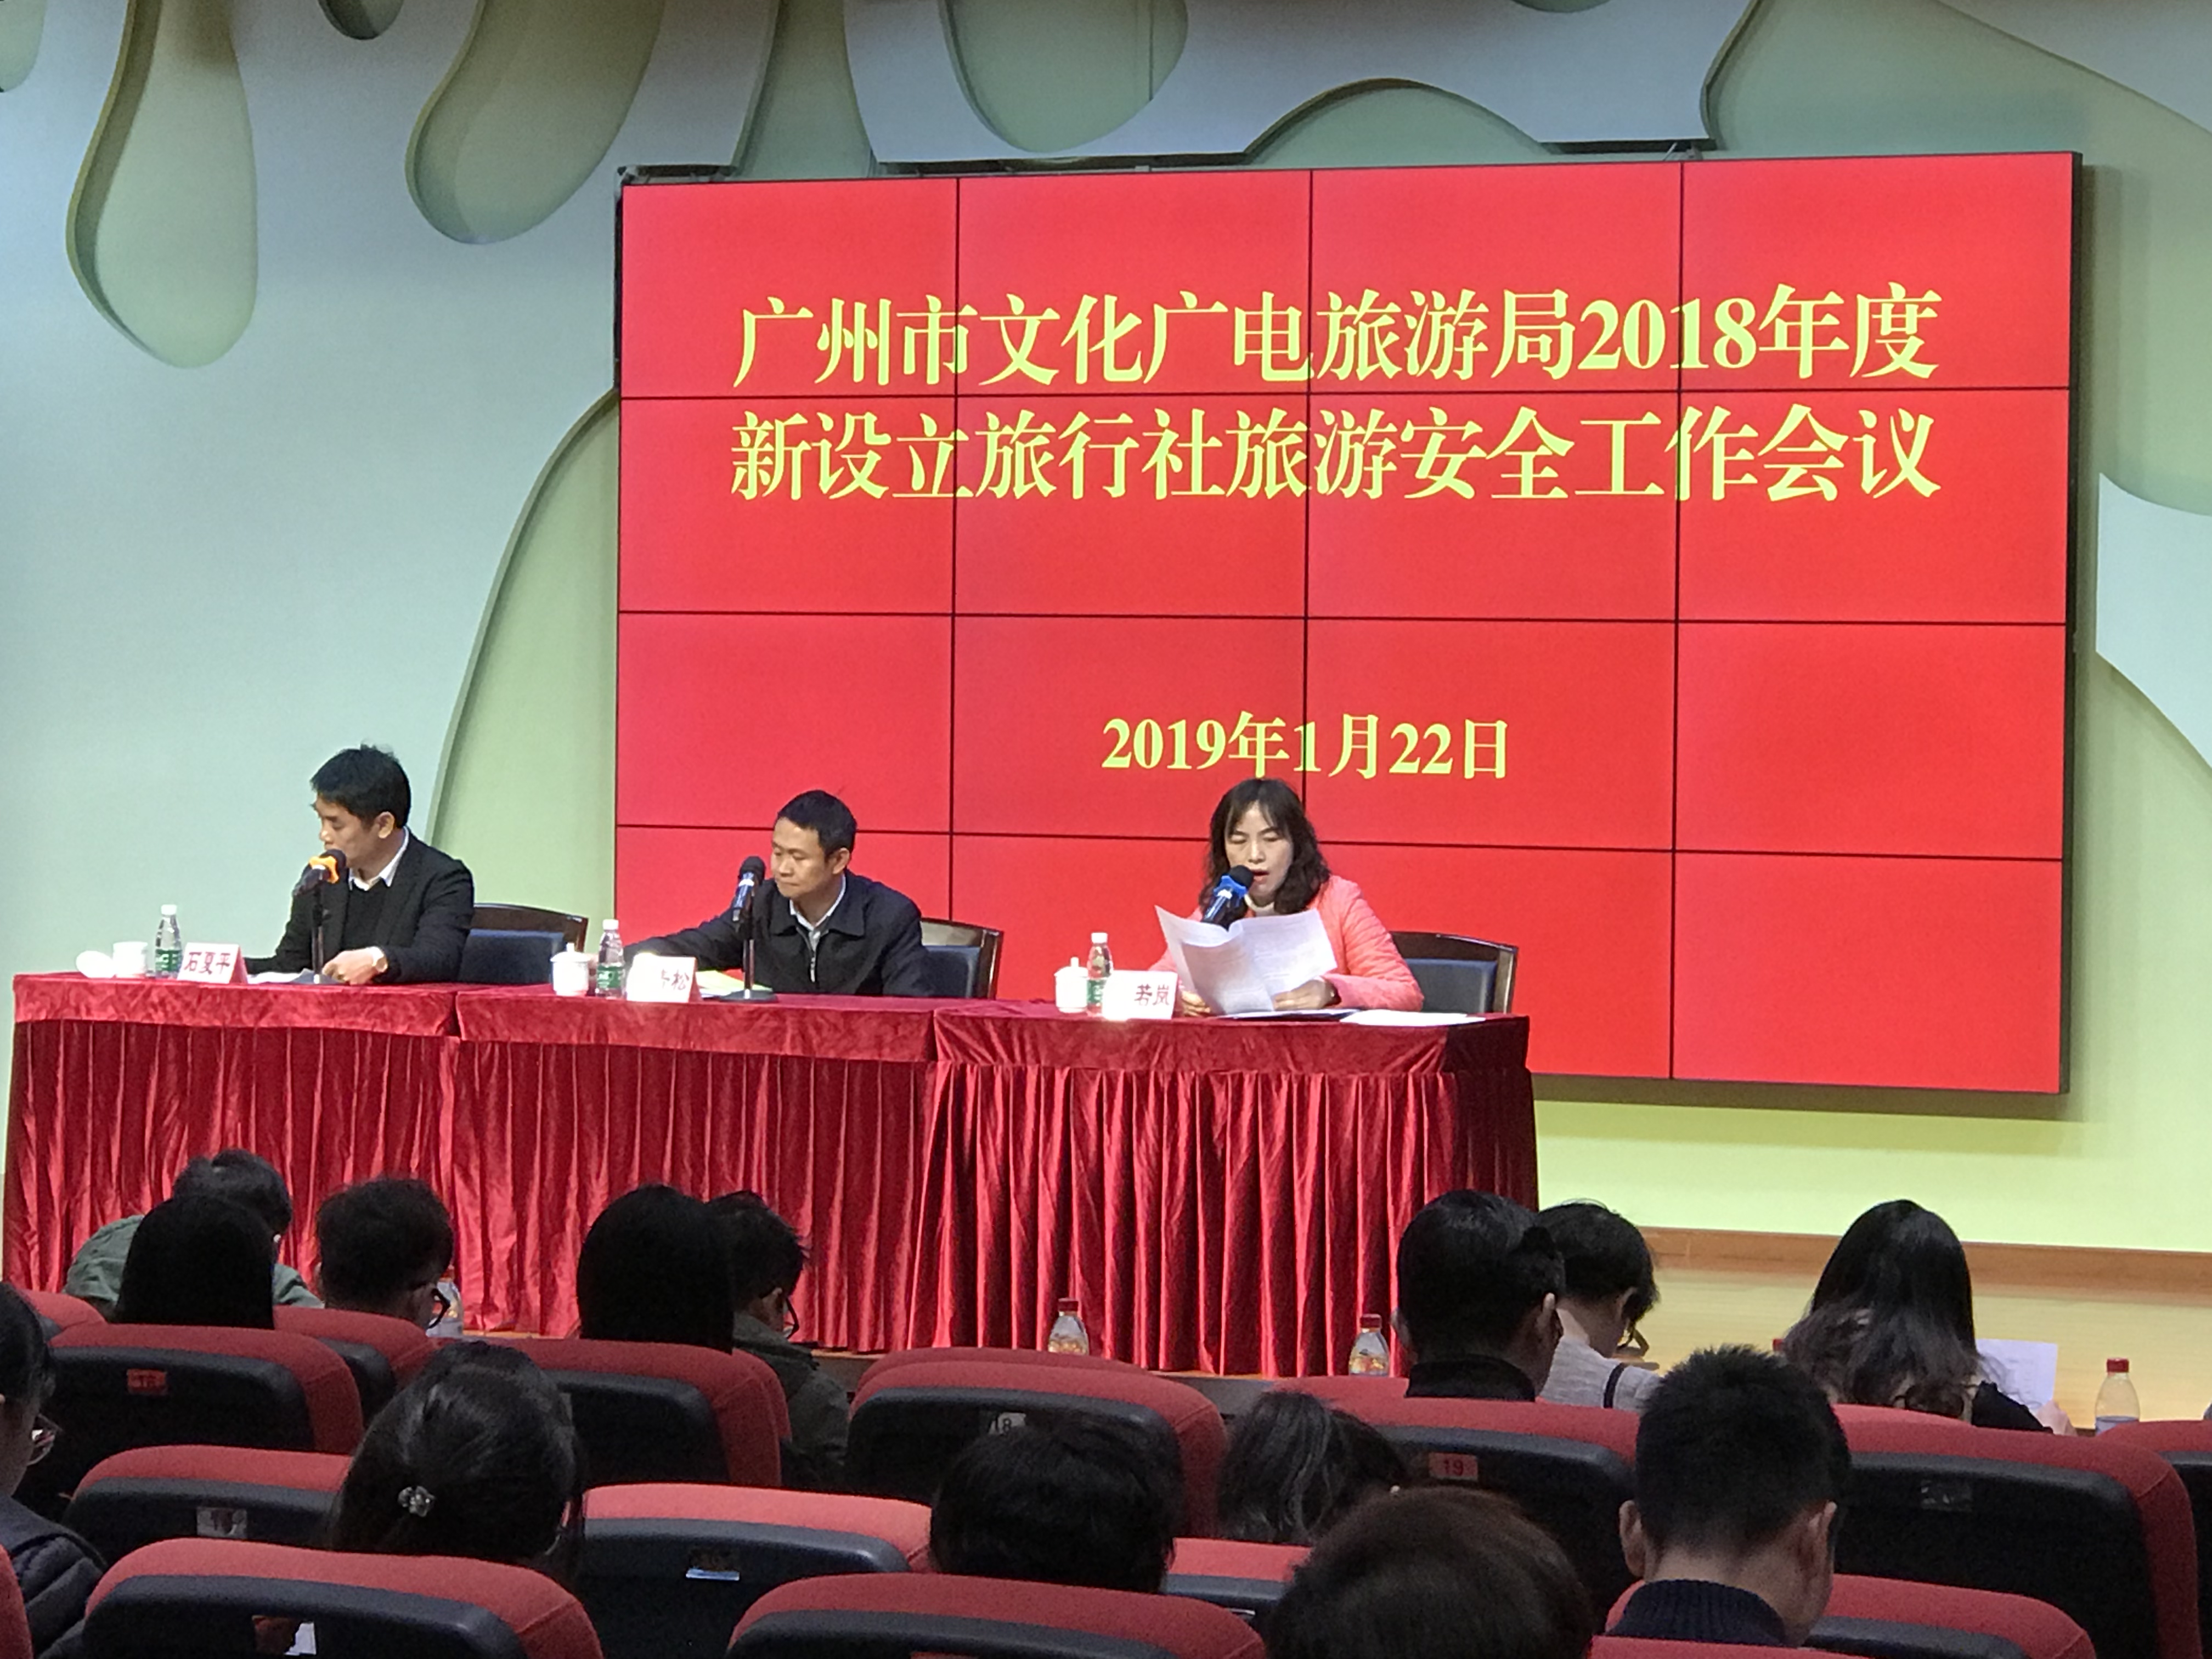 广州市文化广电旅游局召开2018年新设立旅行